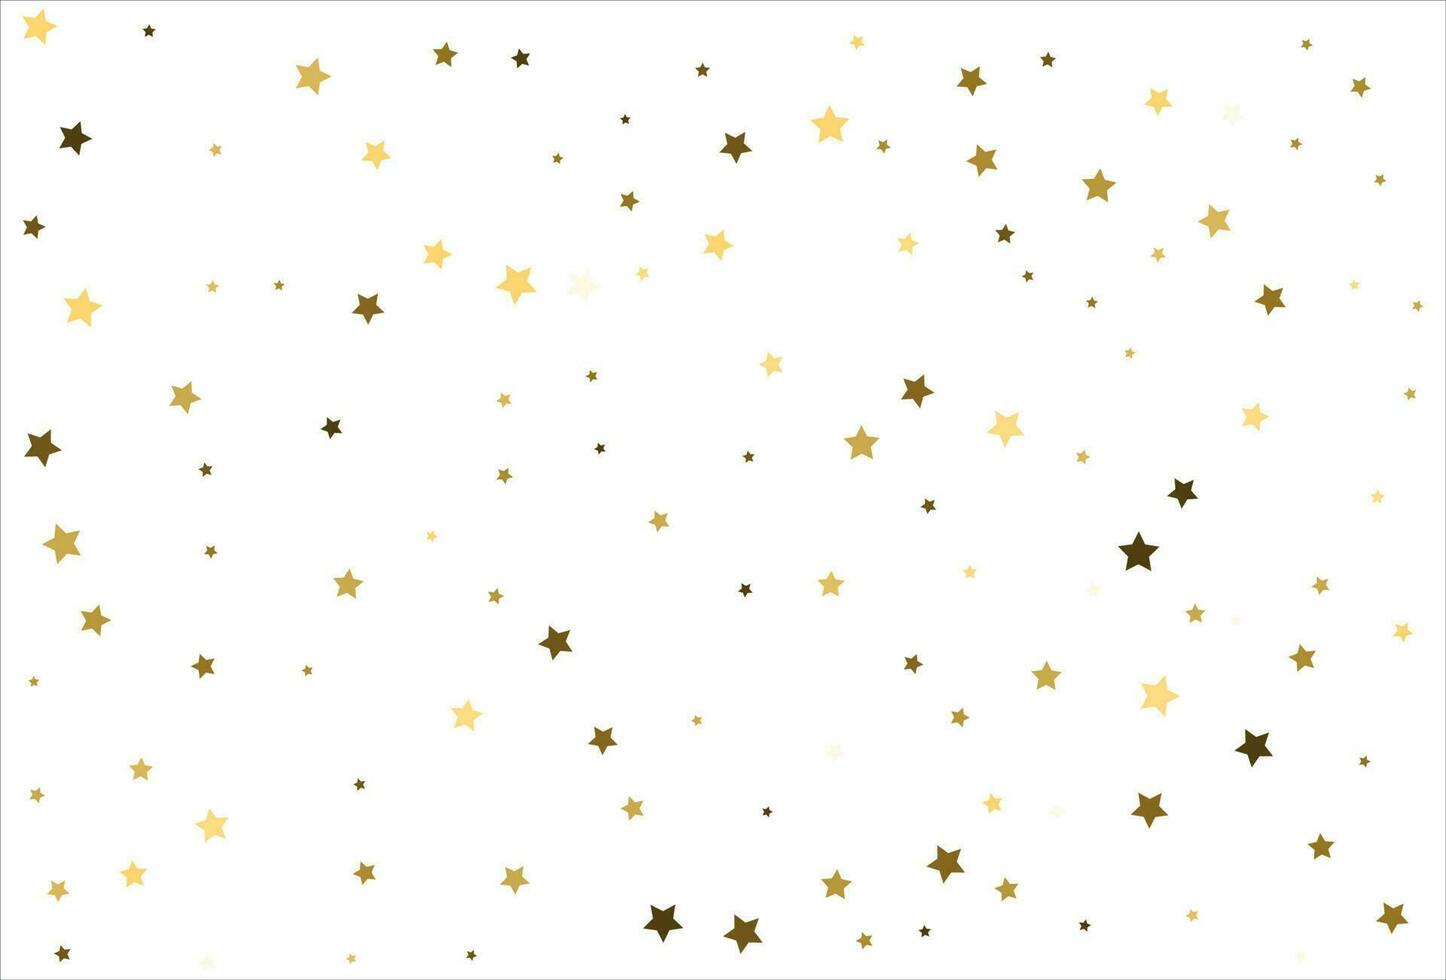 Zufällig fallende goldene Sterne auf weißem Hintergrund. glitzermuster für banner, grußkarte, weihnachts- und neujahrskarte, einladung, postkarte, papierverpackung vektor